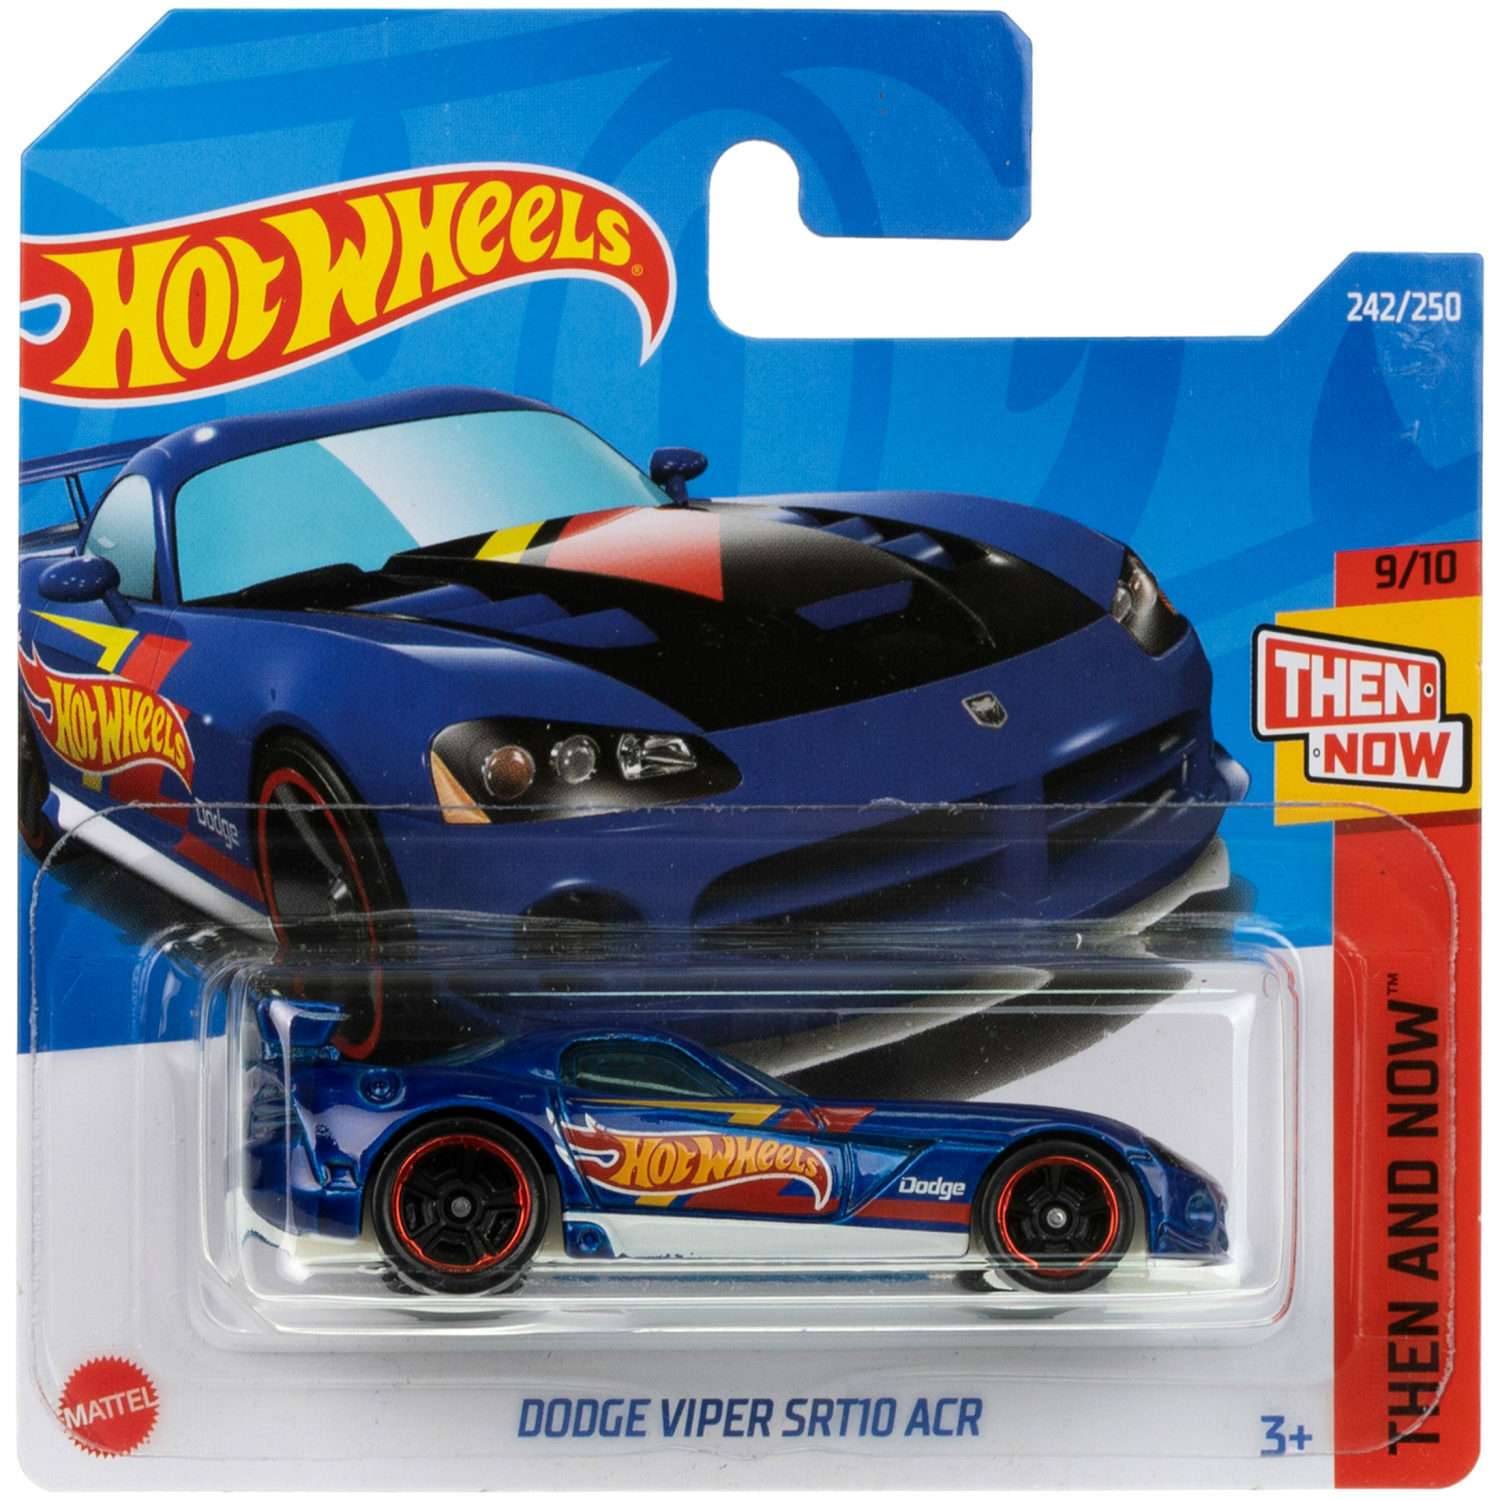 Коллекционная машинка Hot Wheels Dodge viper srt10 acr 5785-116 - фото 6